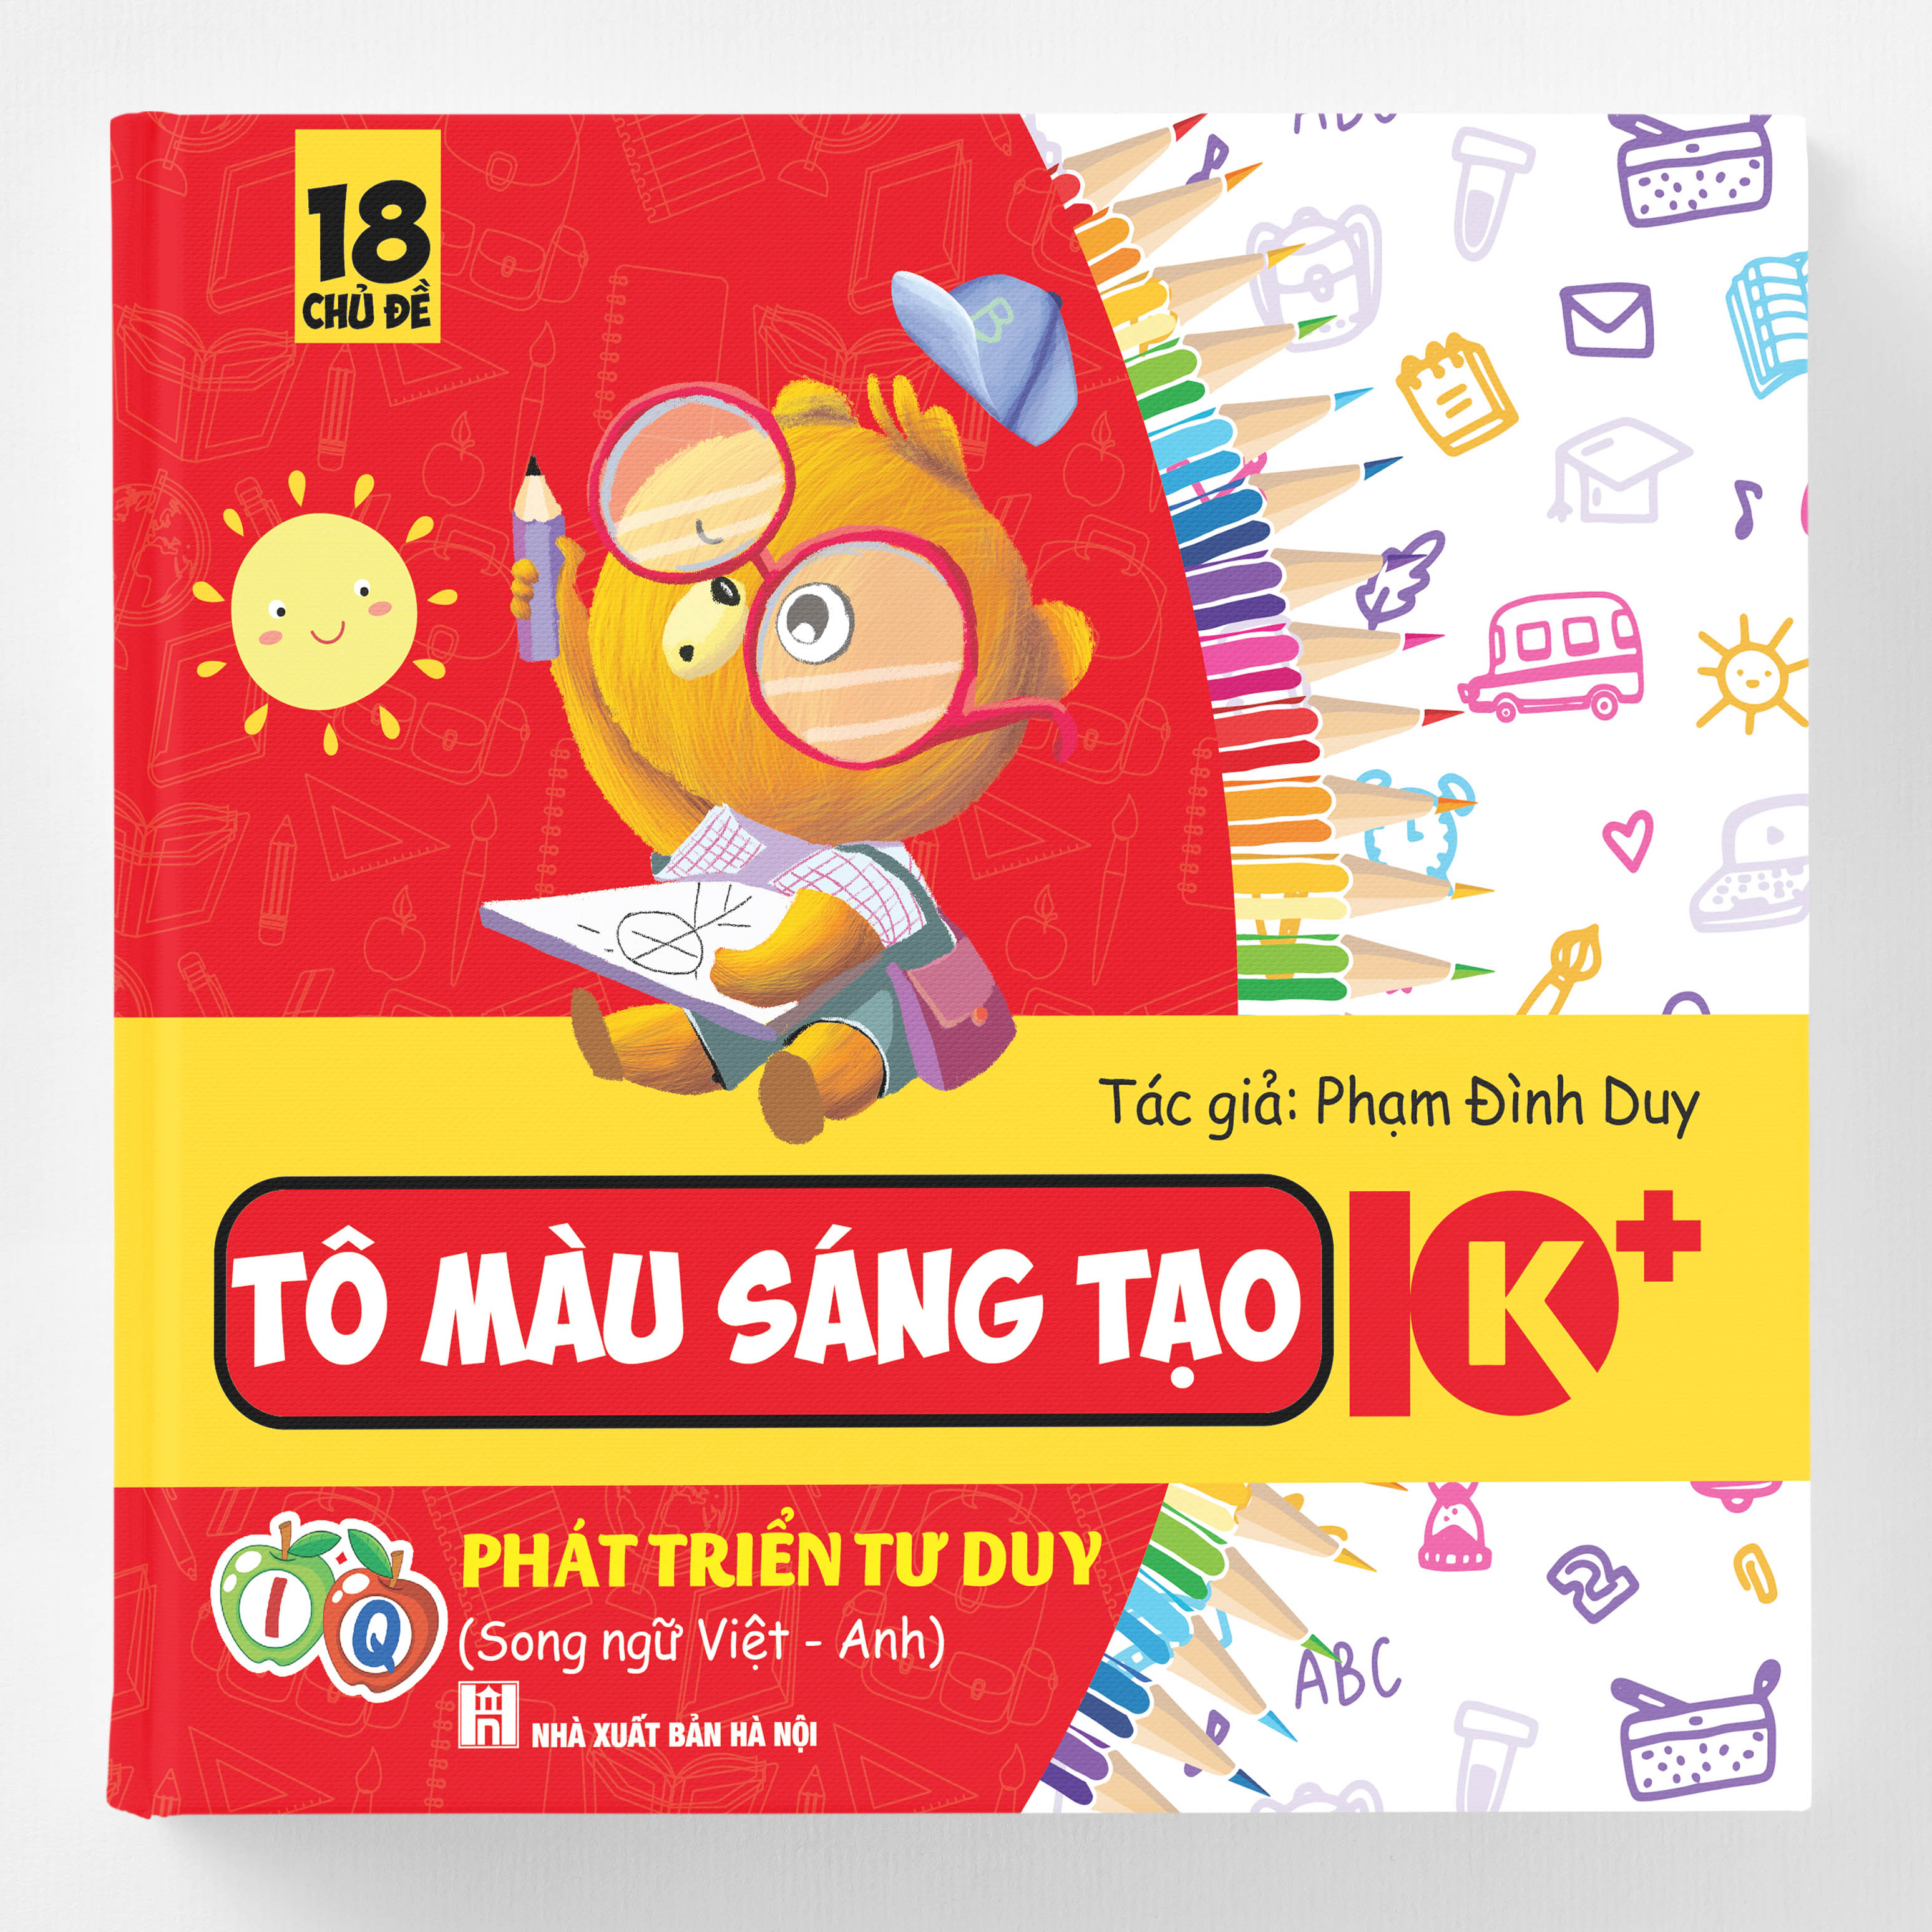 Tô màu Sáng tạo 10K - Phát triển tư duy IQ - Song ngữ Việt - Anh